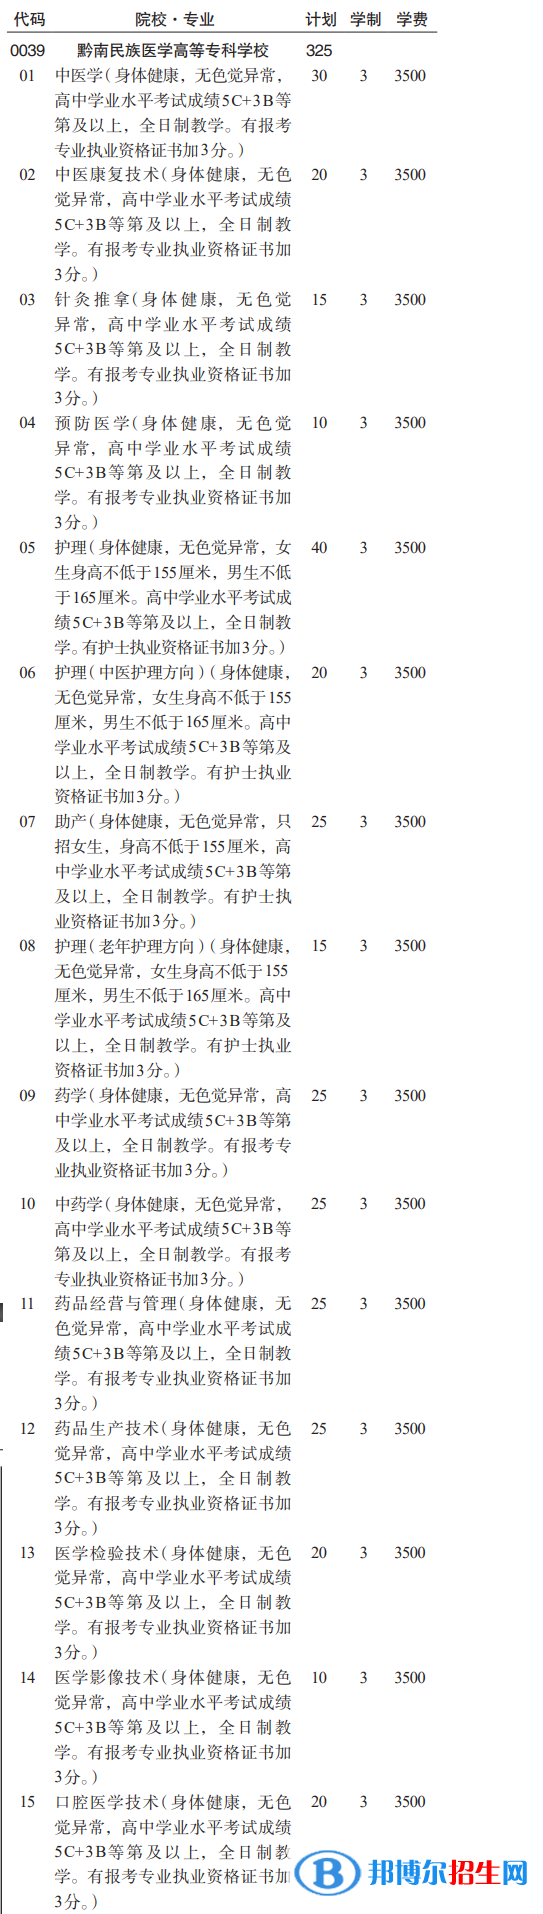 黔南民族医学高等专科学校分类考试招生2023年学费一览表